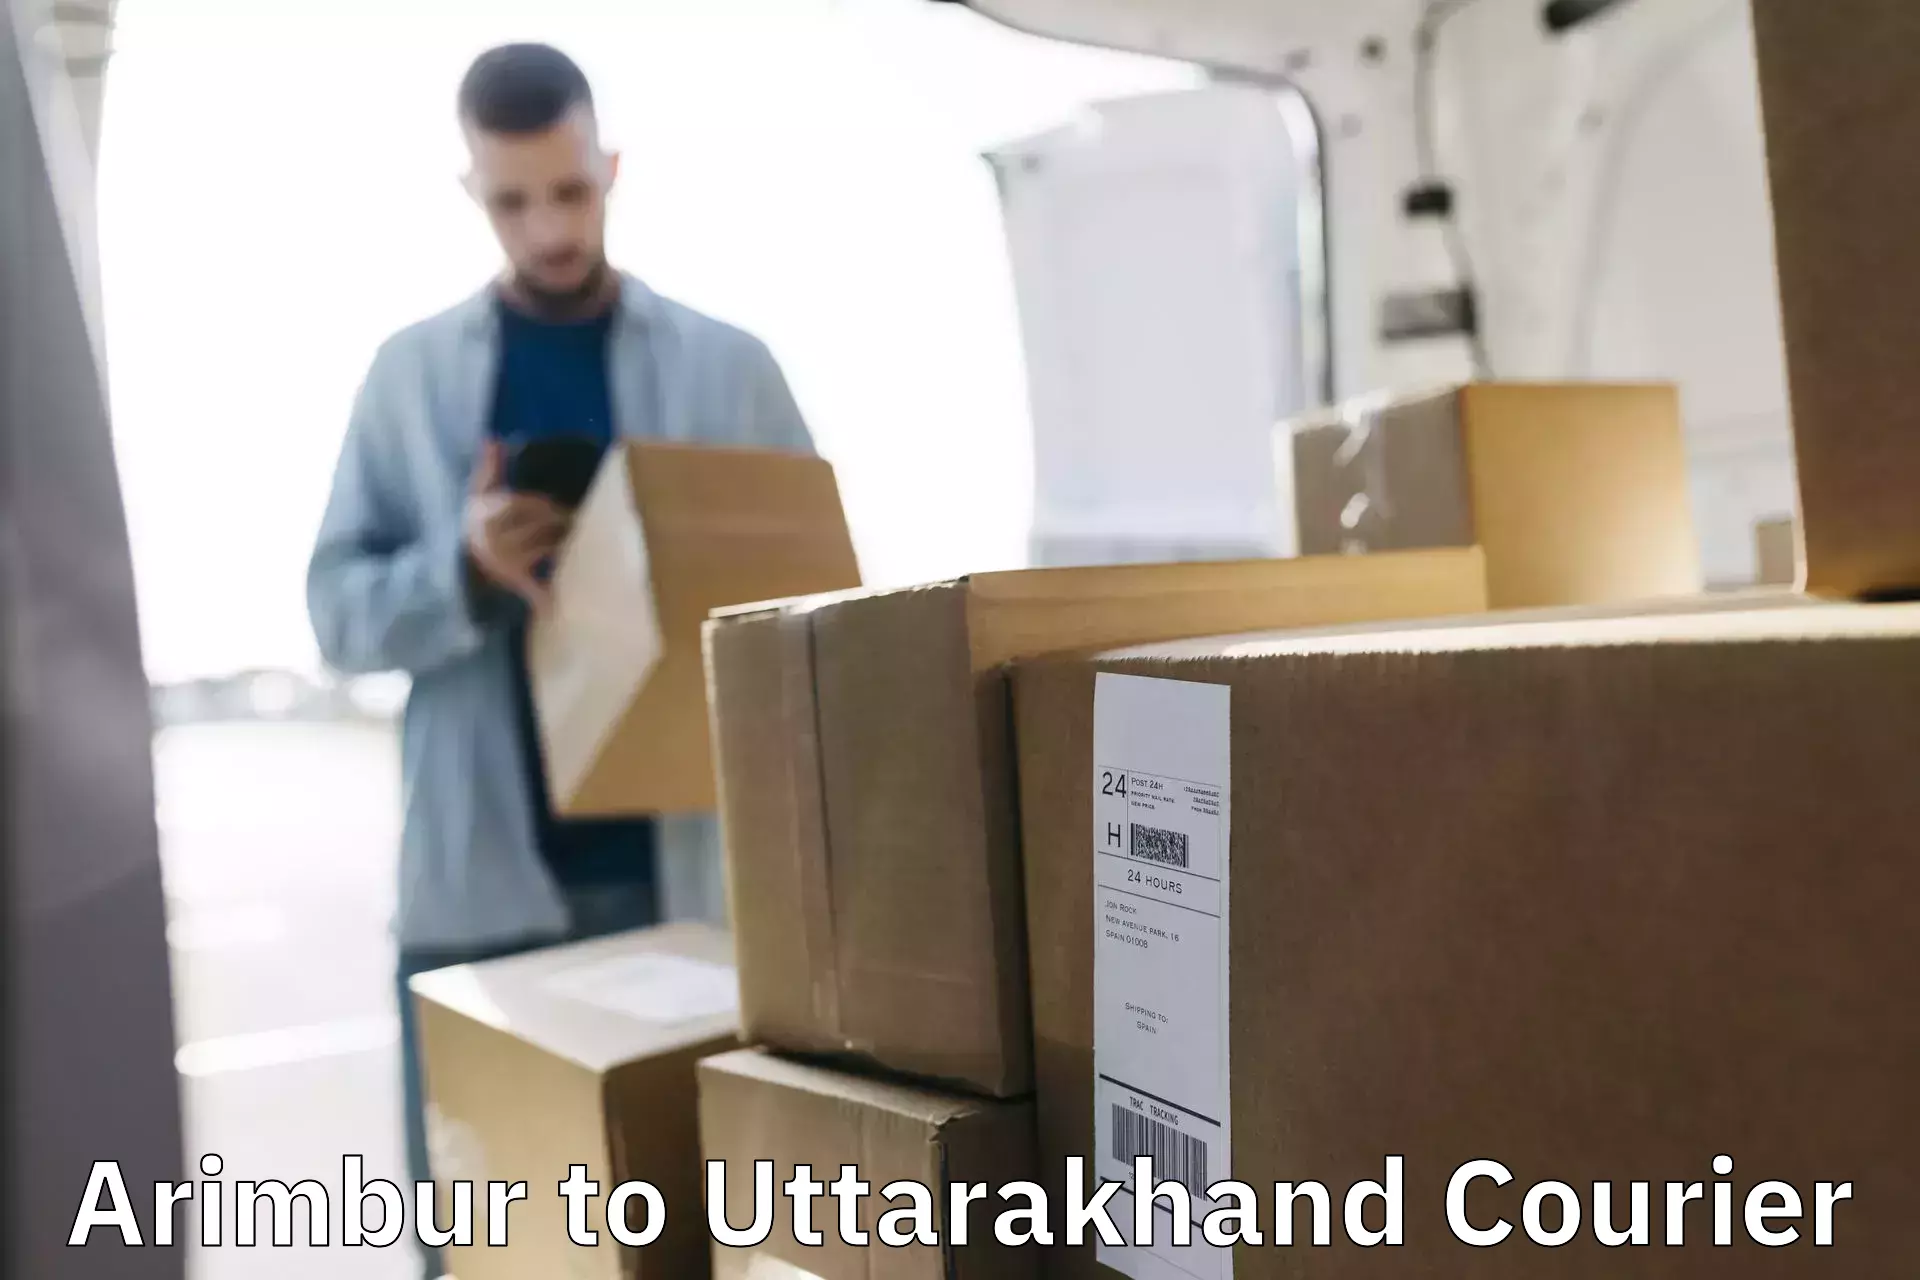 International courier networks Arimbur to Paithani